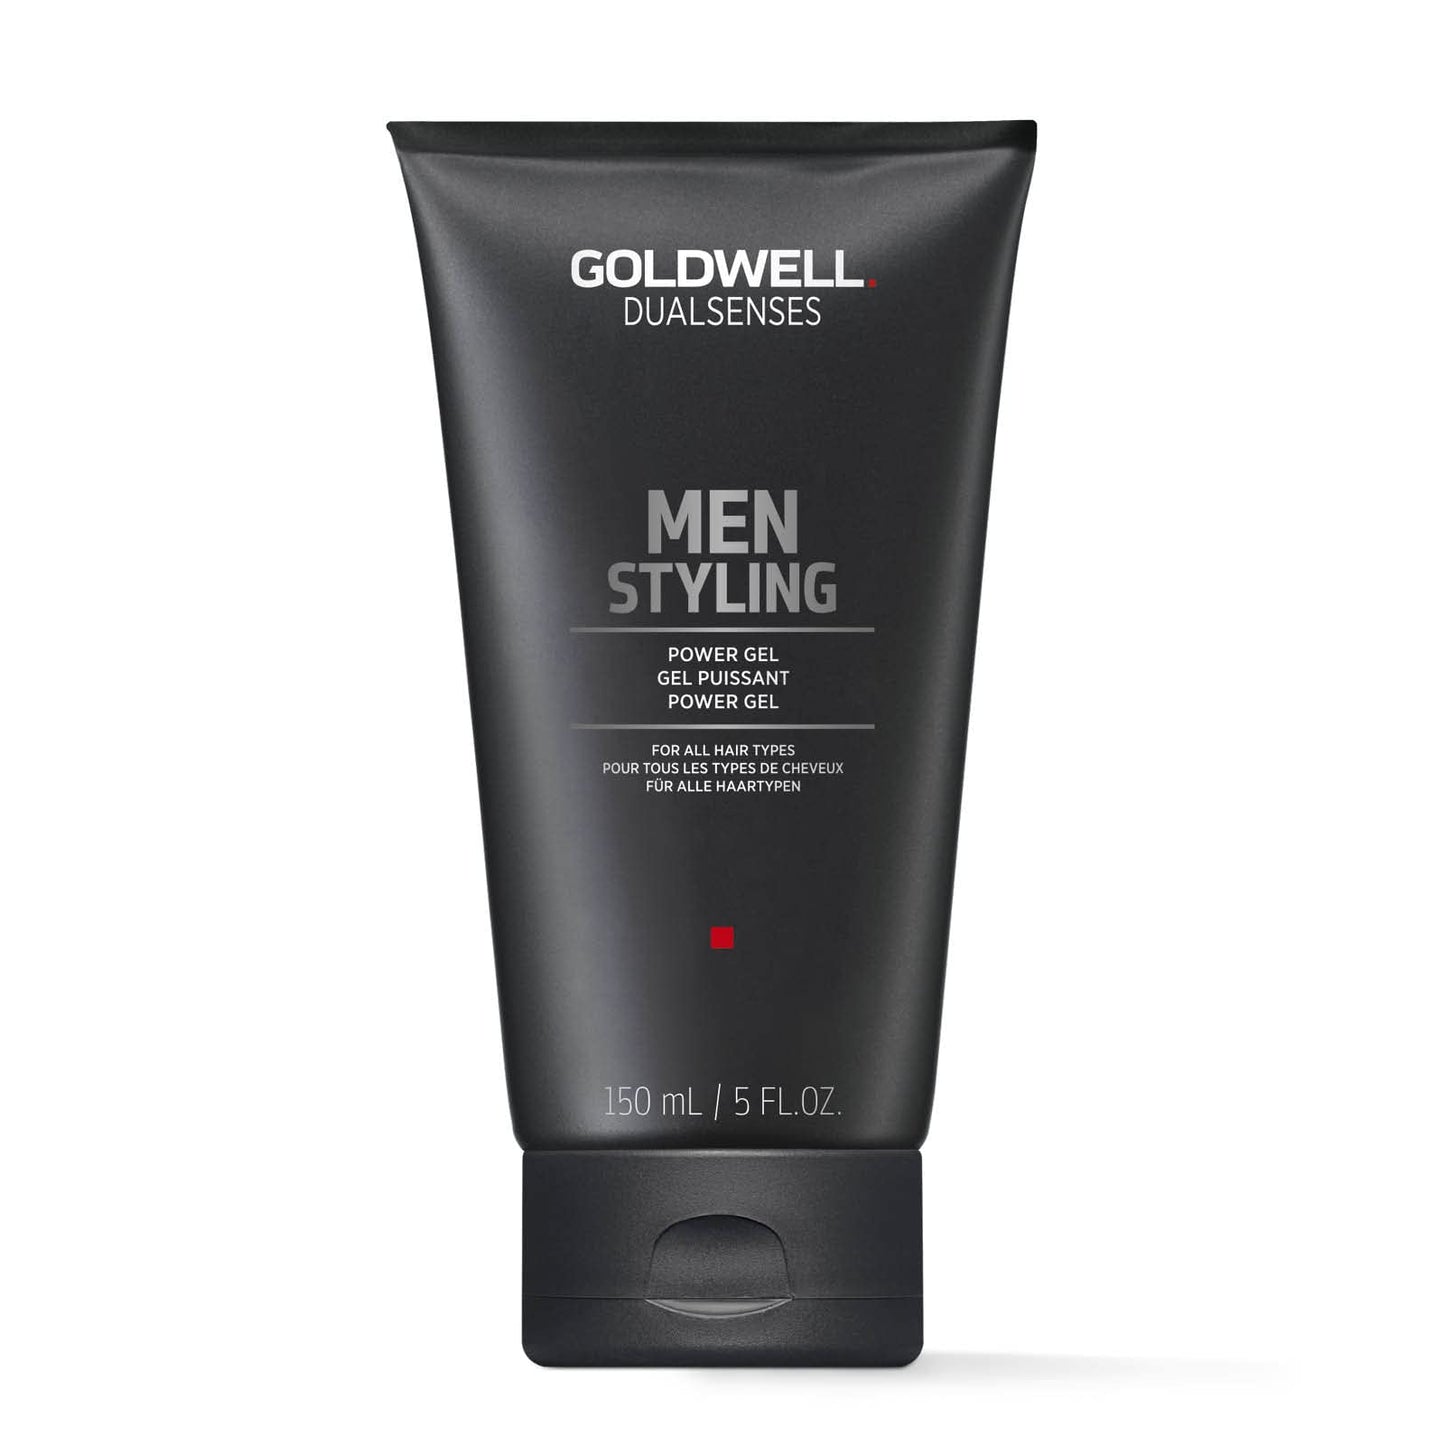 Goldwell Dualsenses - For Men - Power Gel 150ml